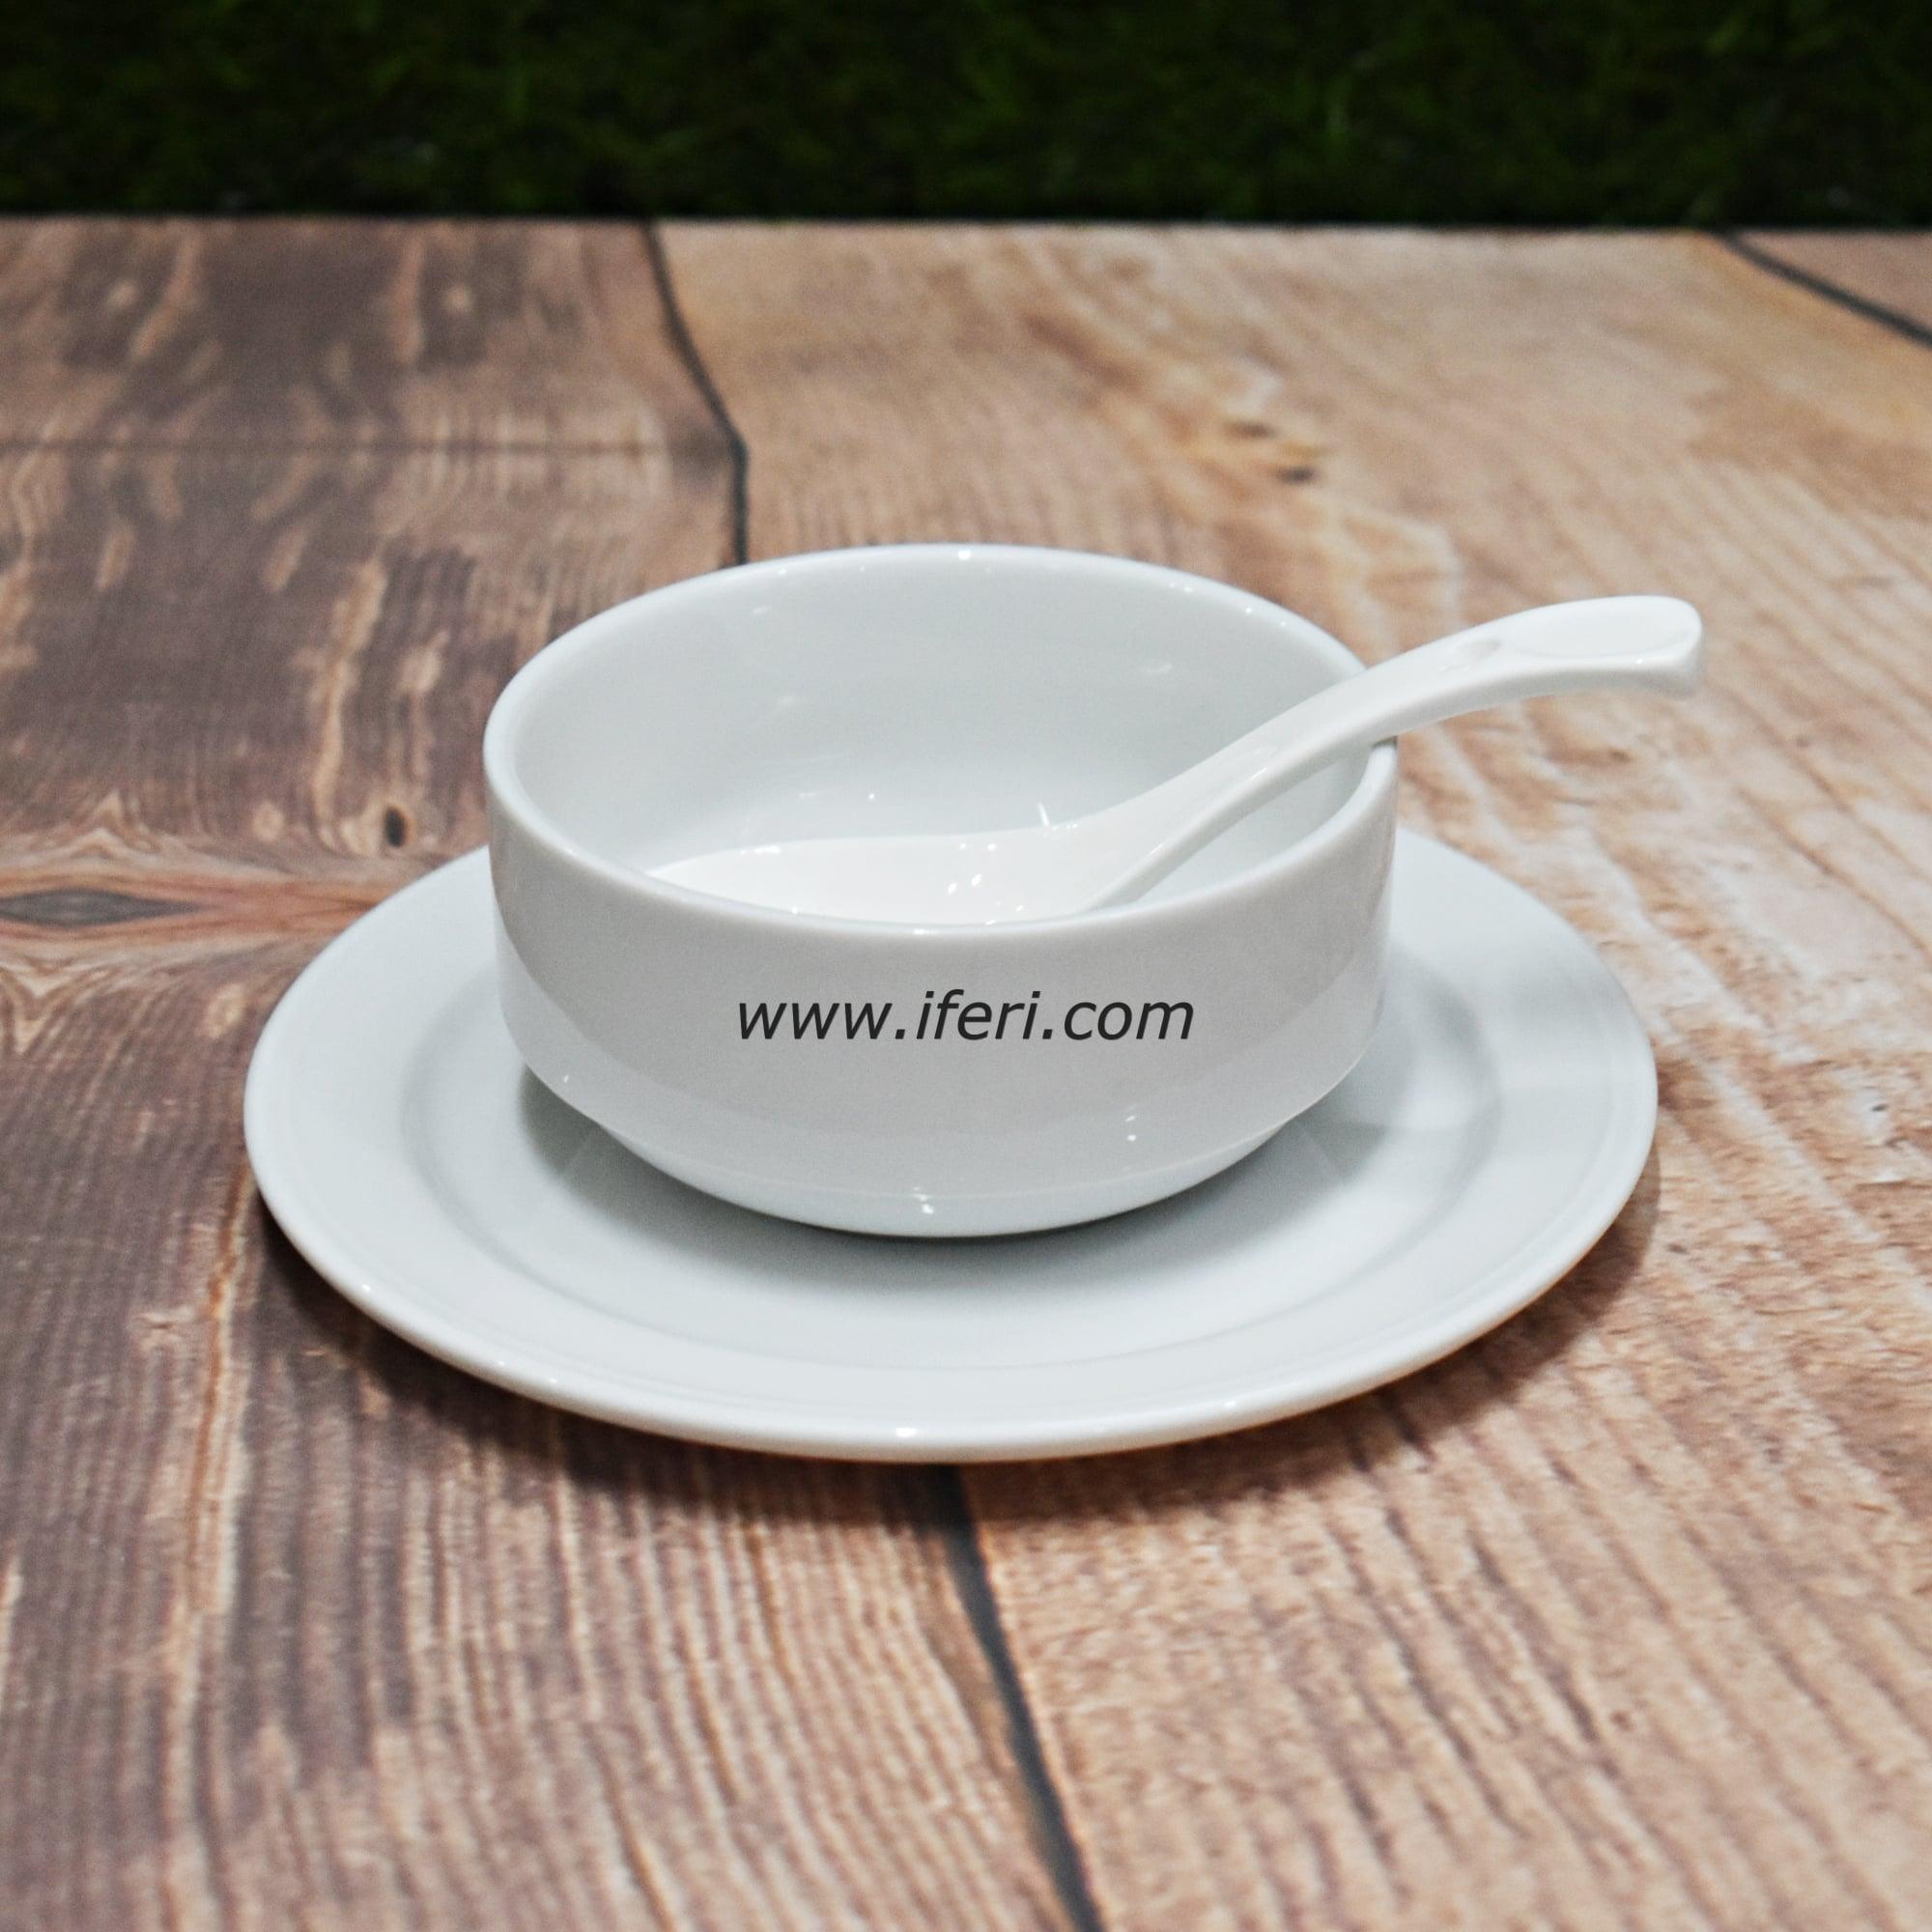 18 pcs White Ceramic Soup Set SN4859 Price in Bangladesh - iferi.com